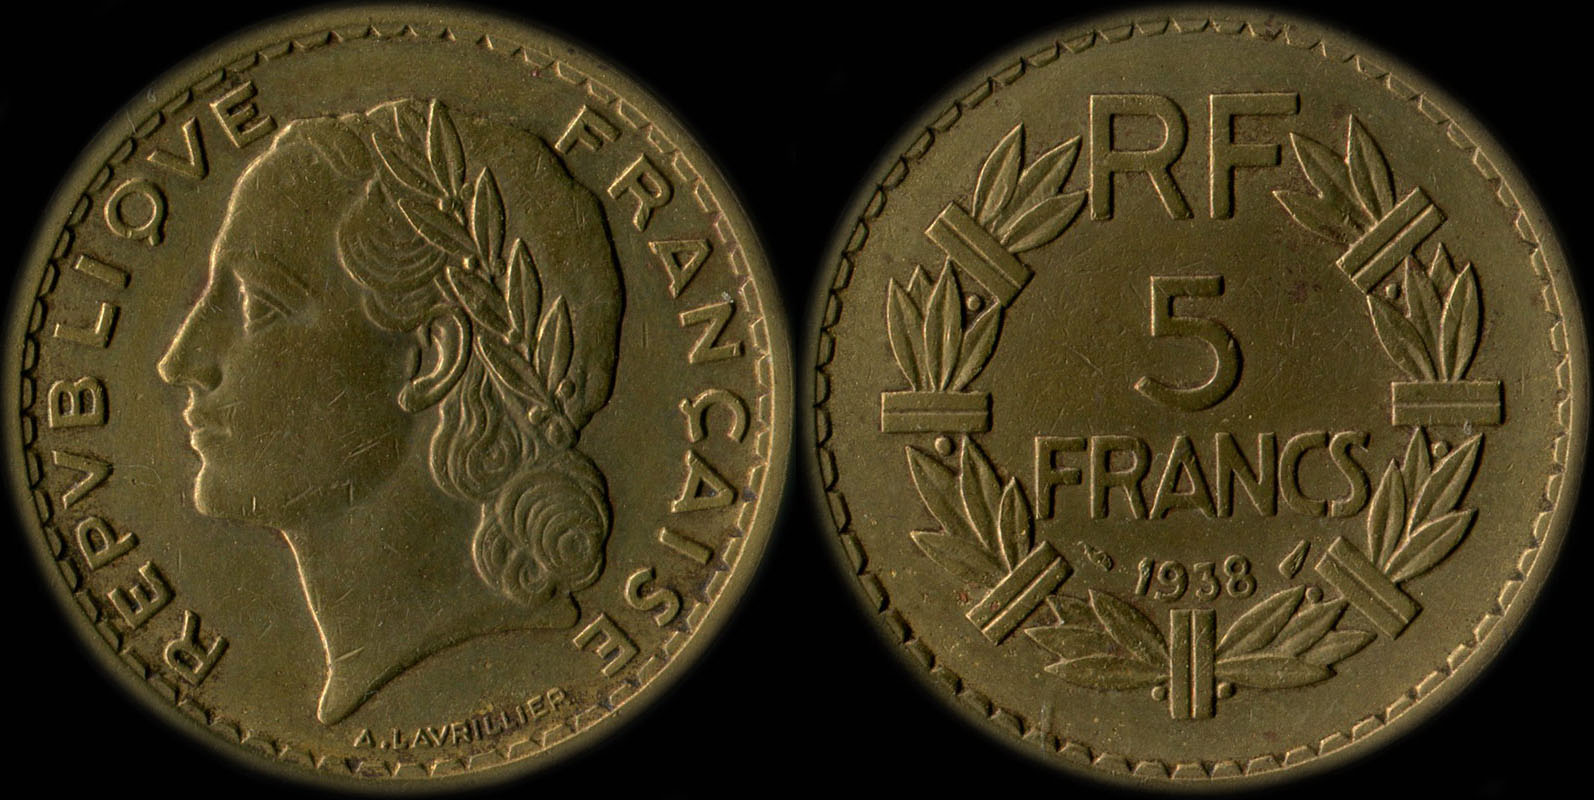 Pice de 5 francs Lavrillier 1938